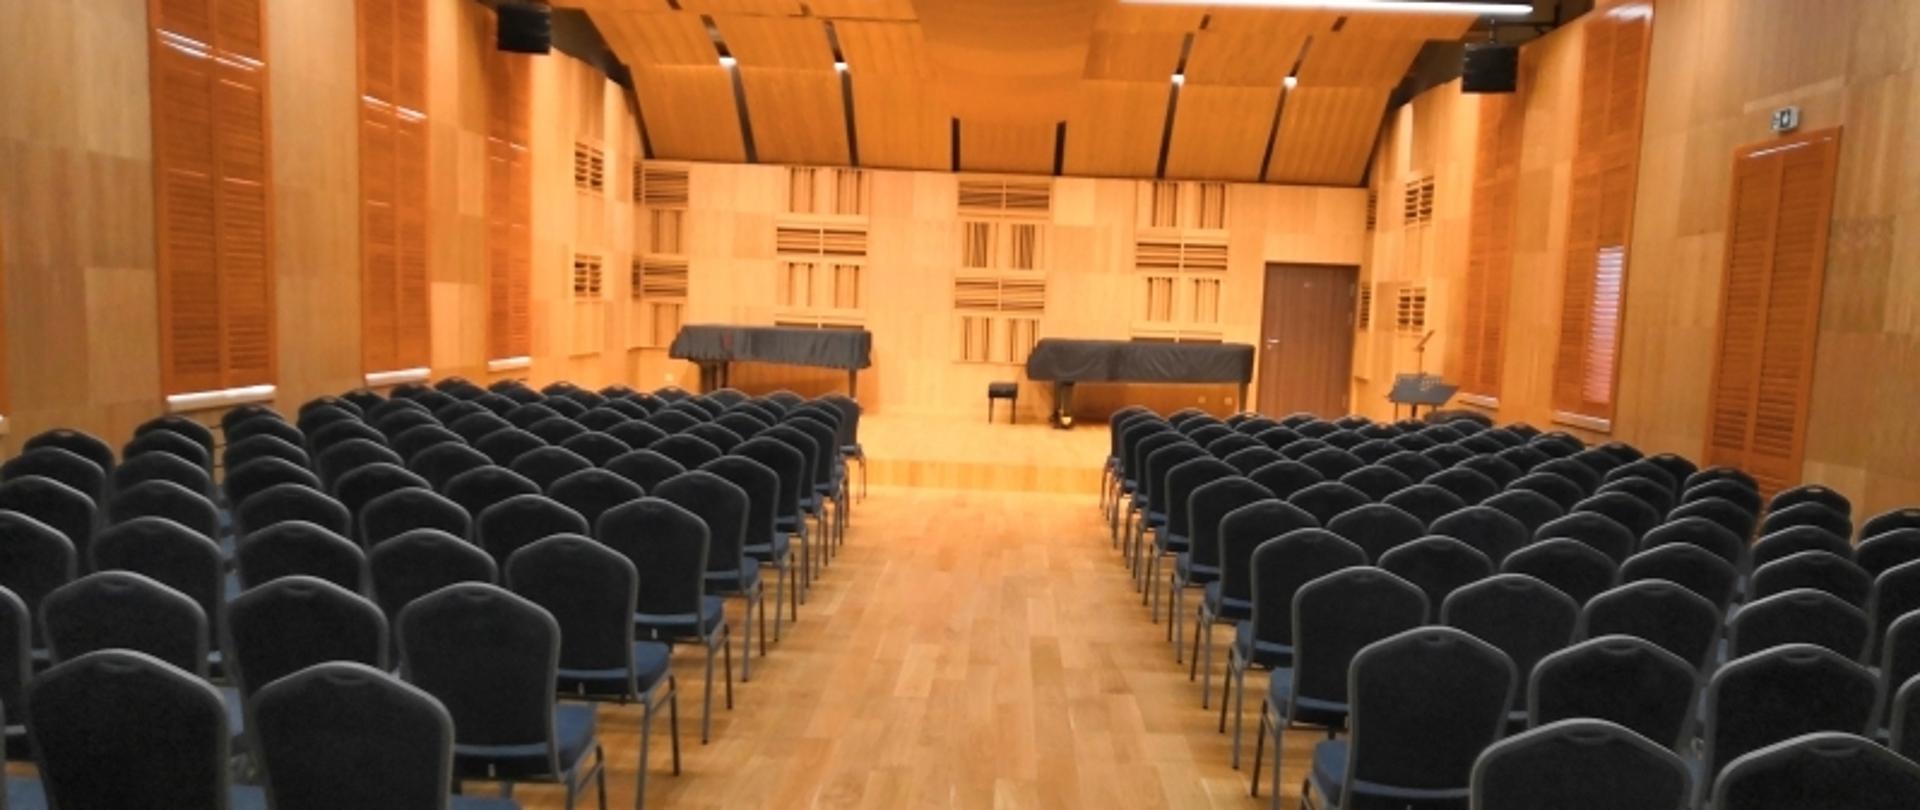 Sala koncertowa Zespołu Szkół Muzycznych w Pile. Widok od strony wejścia na estradę. Obszerna oświetlona sala, wykończona drewnem. Na suficie ekrany akustyczne. Rzędy krzeseł po obu stronach przejście środkiem do estrady na której stoją dwa fortepiany.